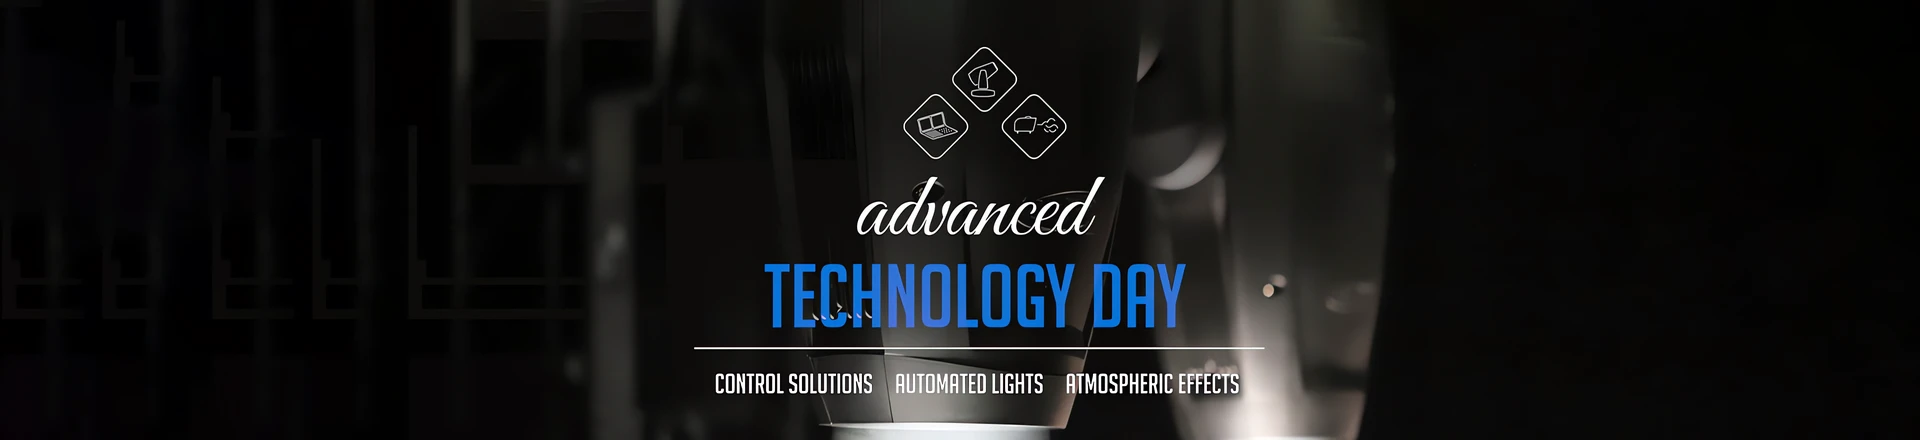 Advanced Technology Day - prezentacja już 30 września